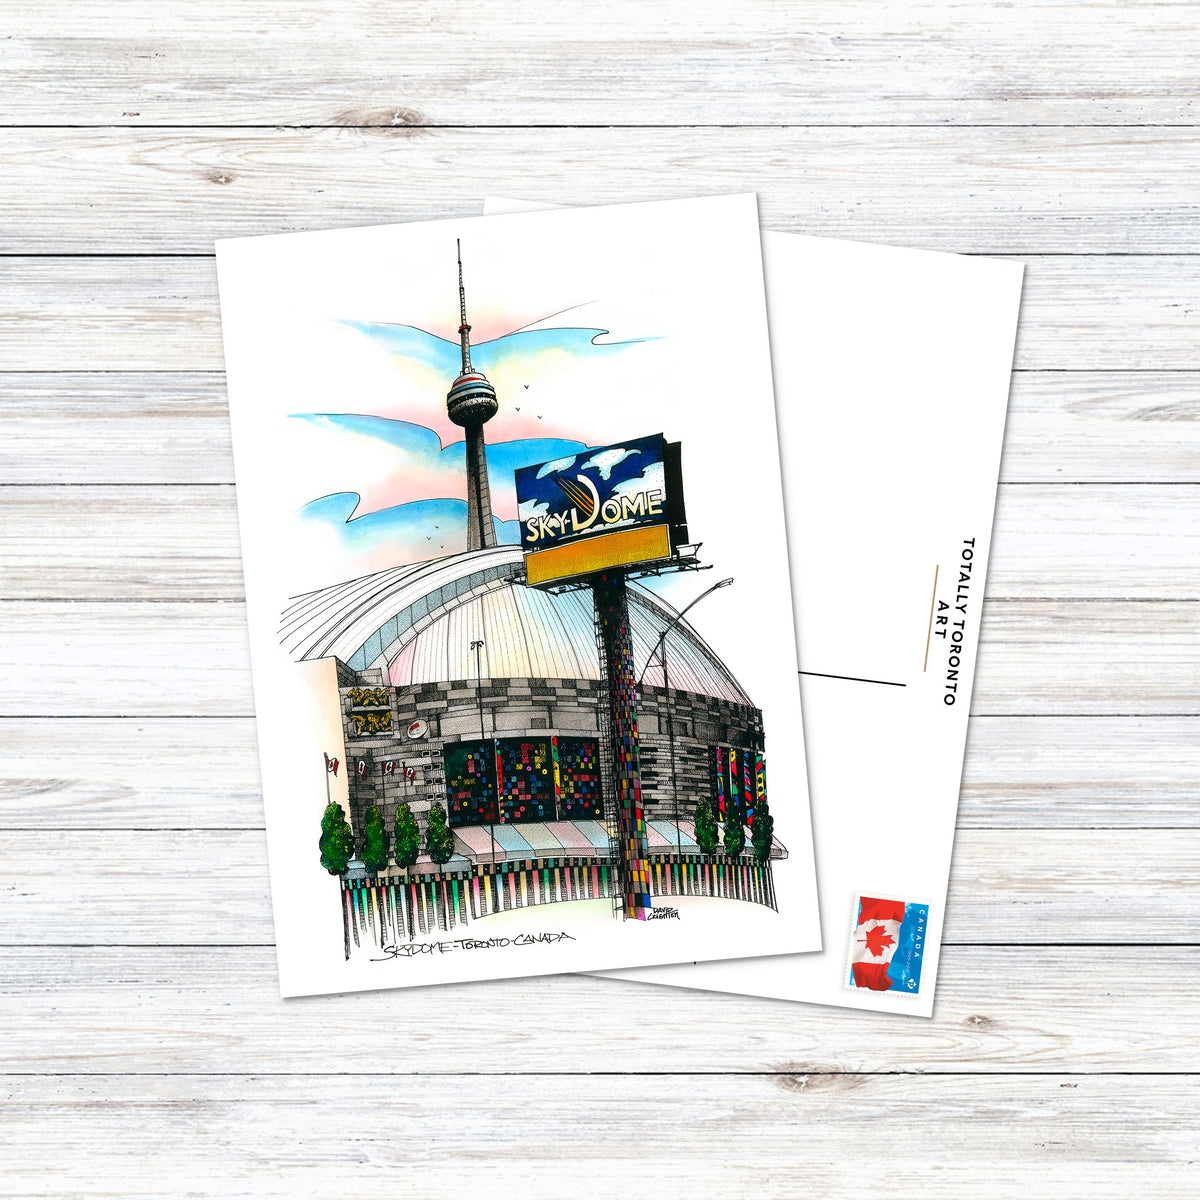 Skydome Toronto Postcard | Totally Toronto Art Inc. 